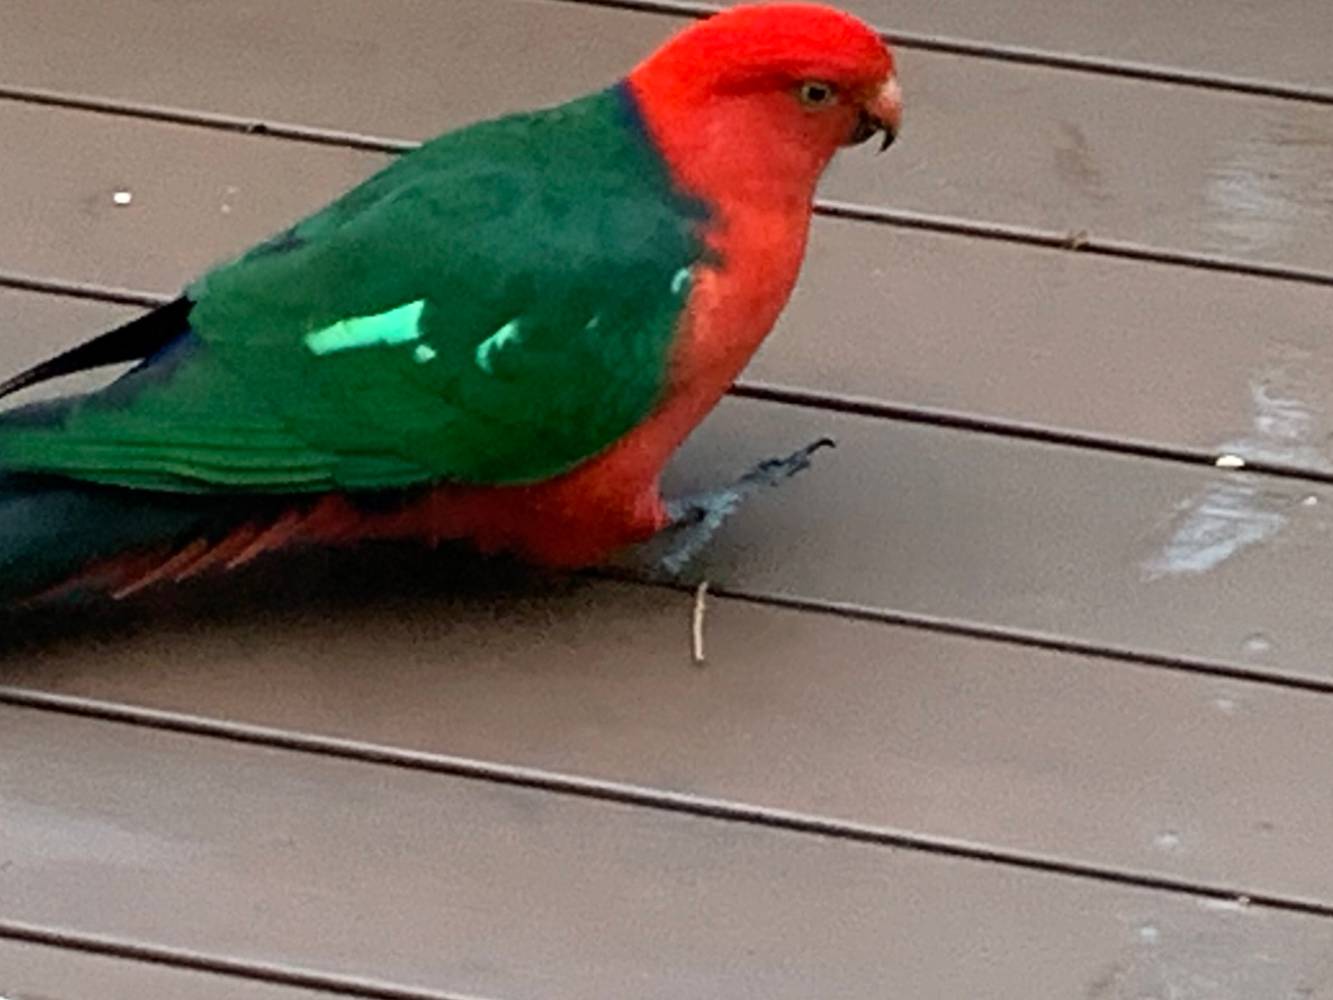 Coloured birds are delightful visitors.